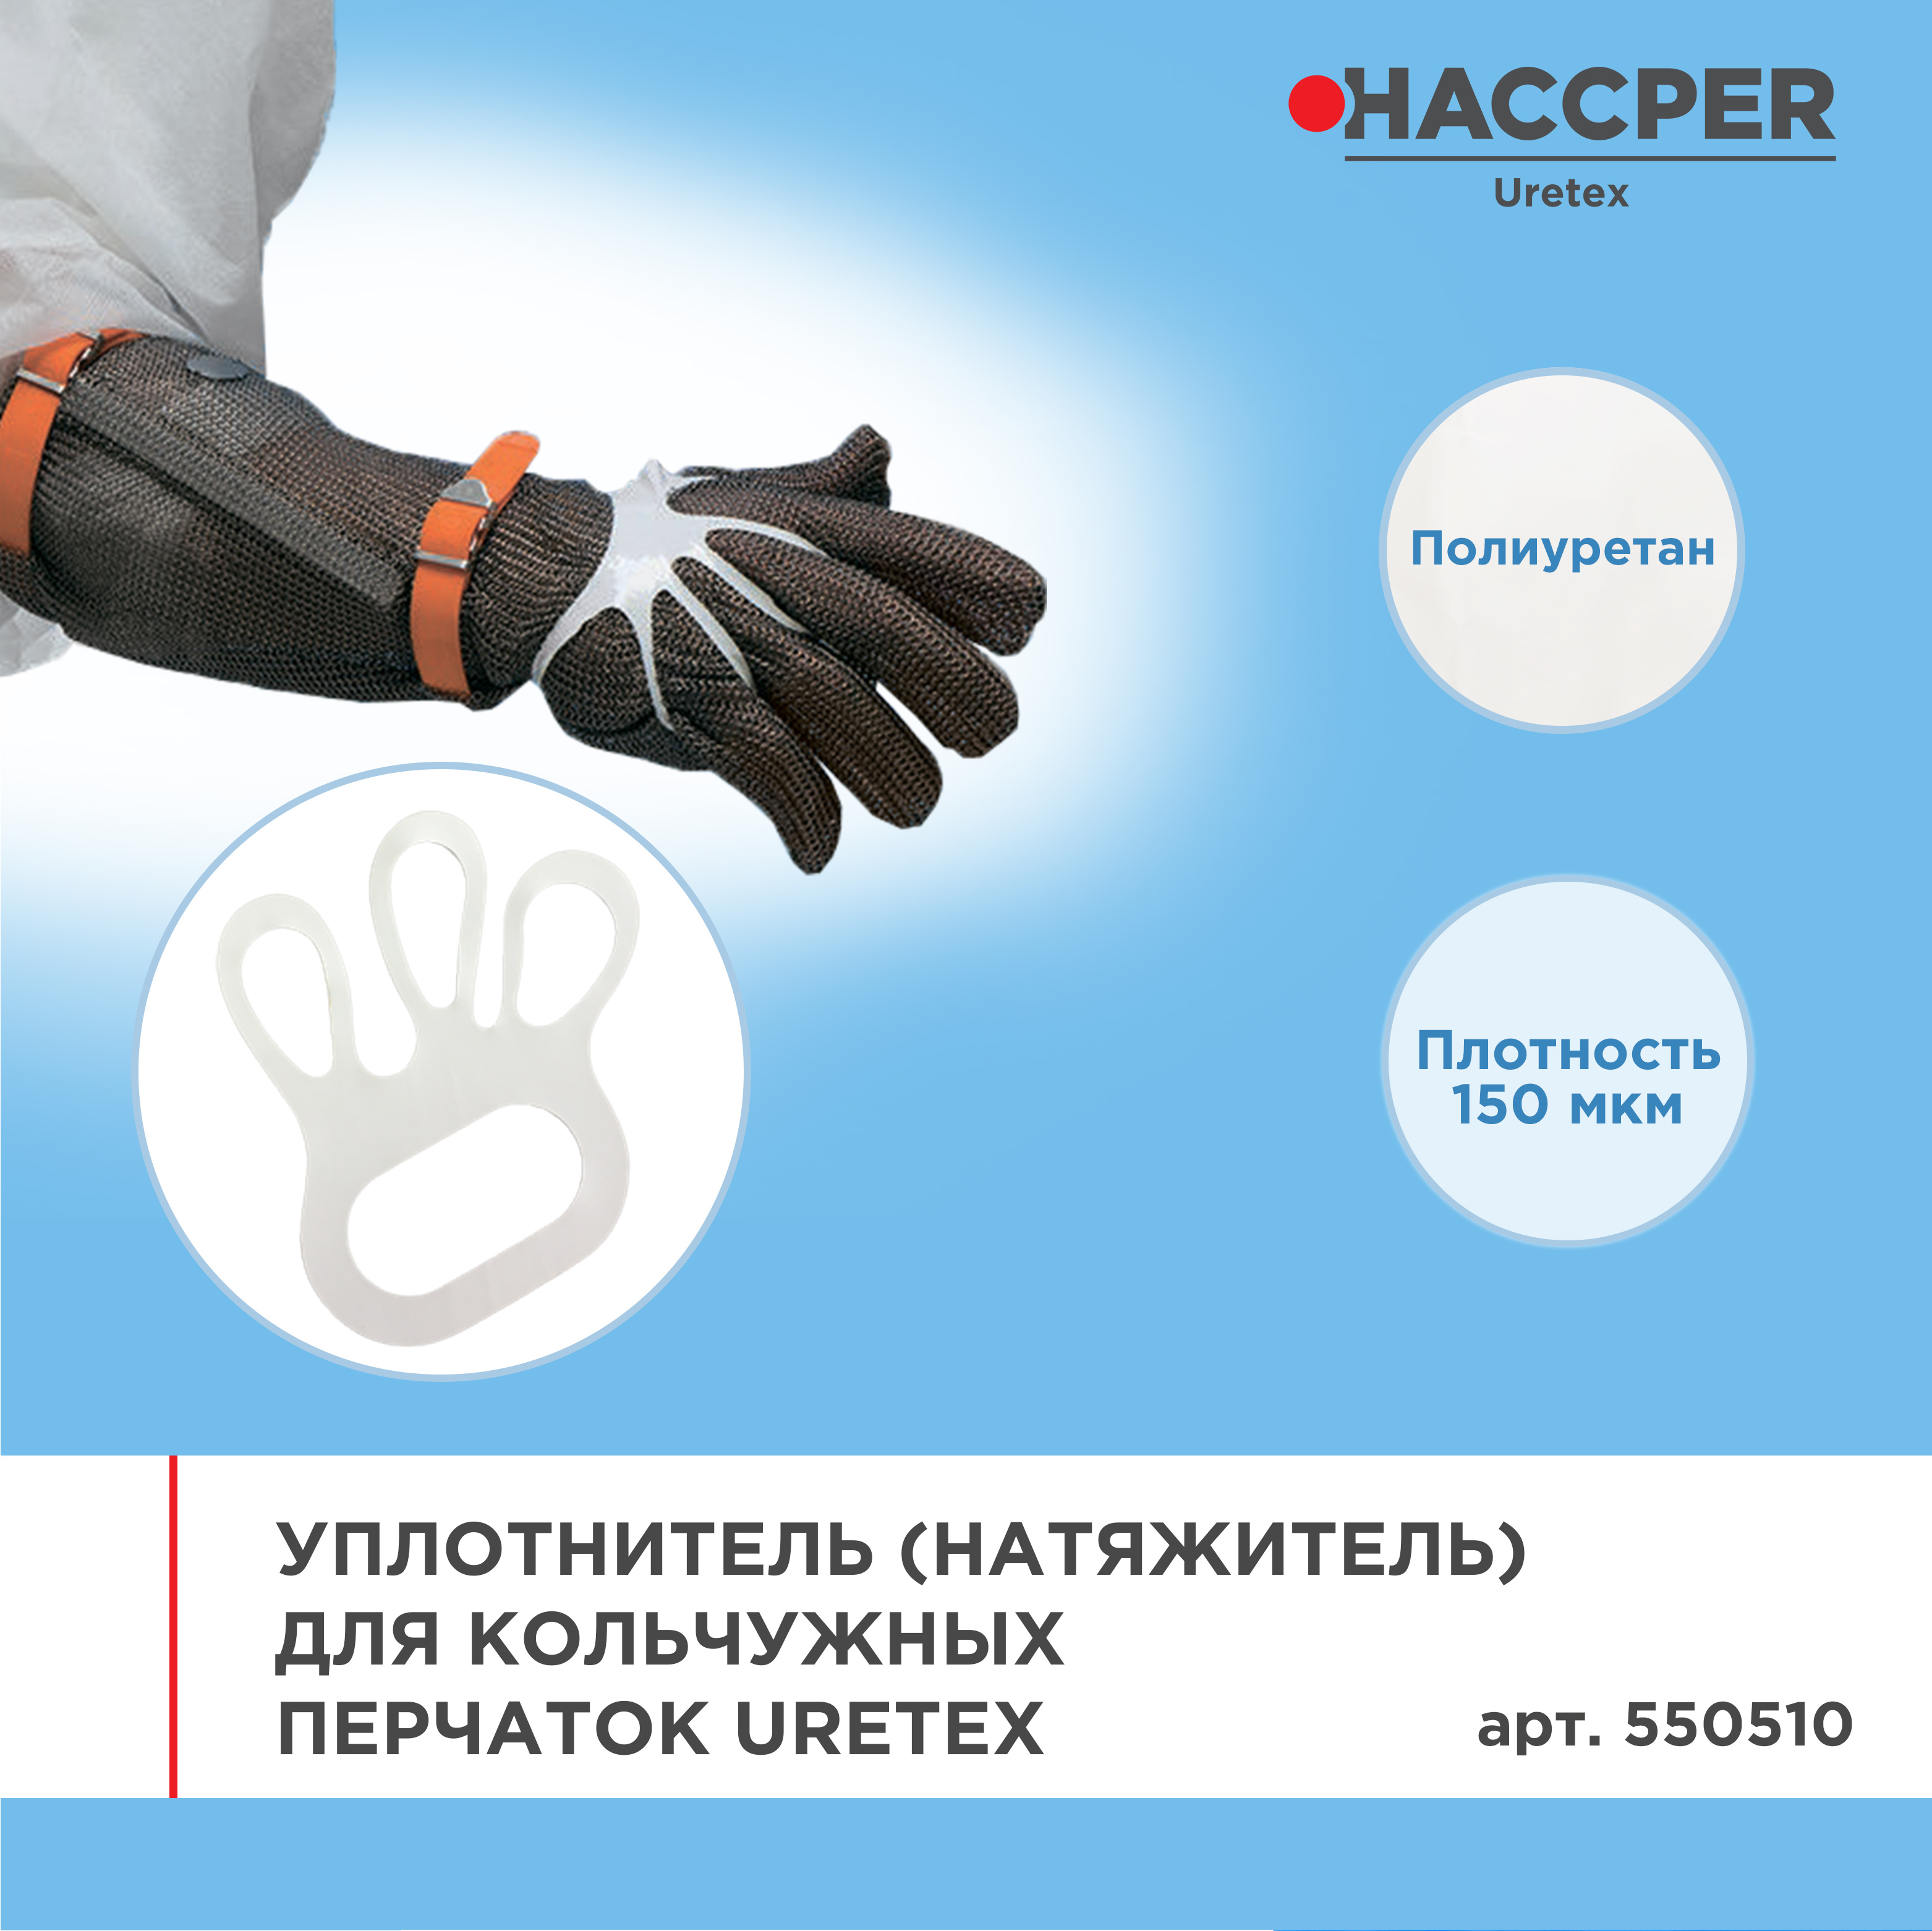 Уплотнитель (натяжитель) для кольчужных перчаток HACCPER Uretex, белый, 150 мкм, 100 шт/кор